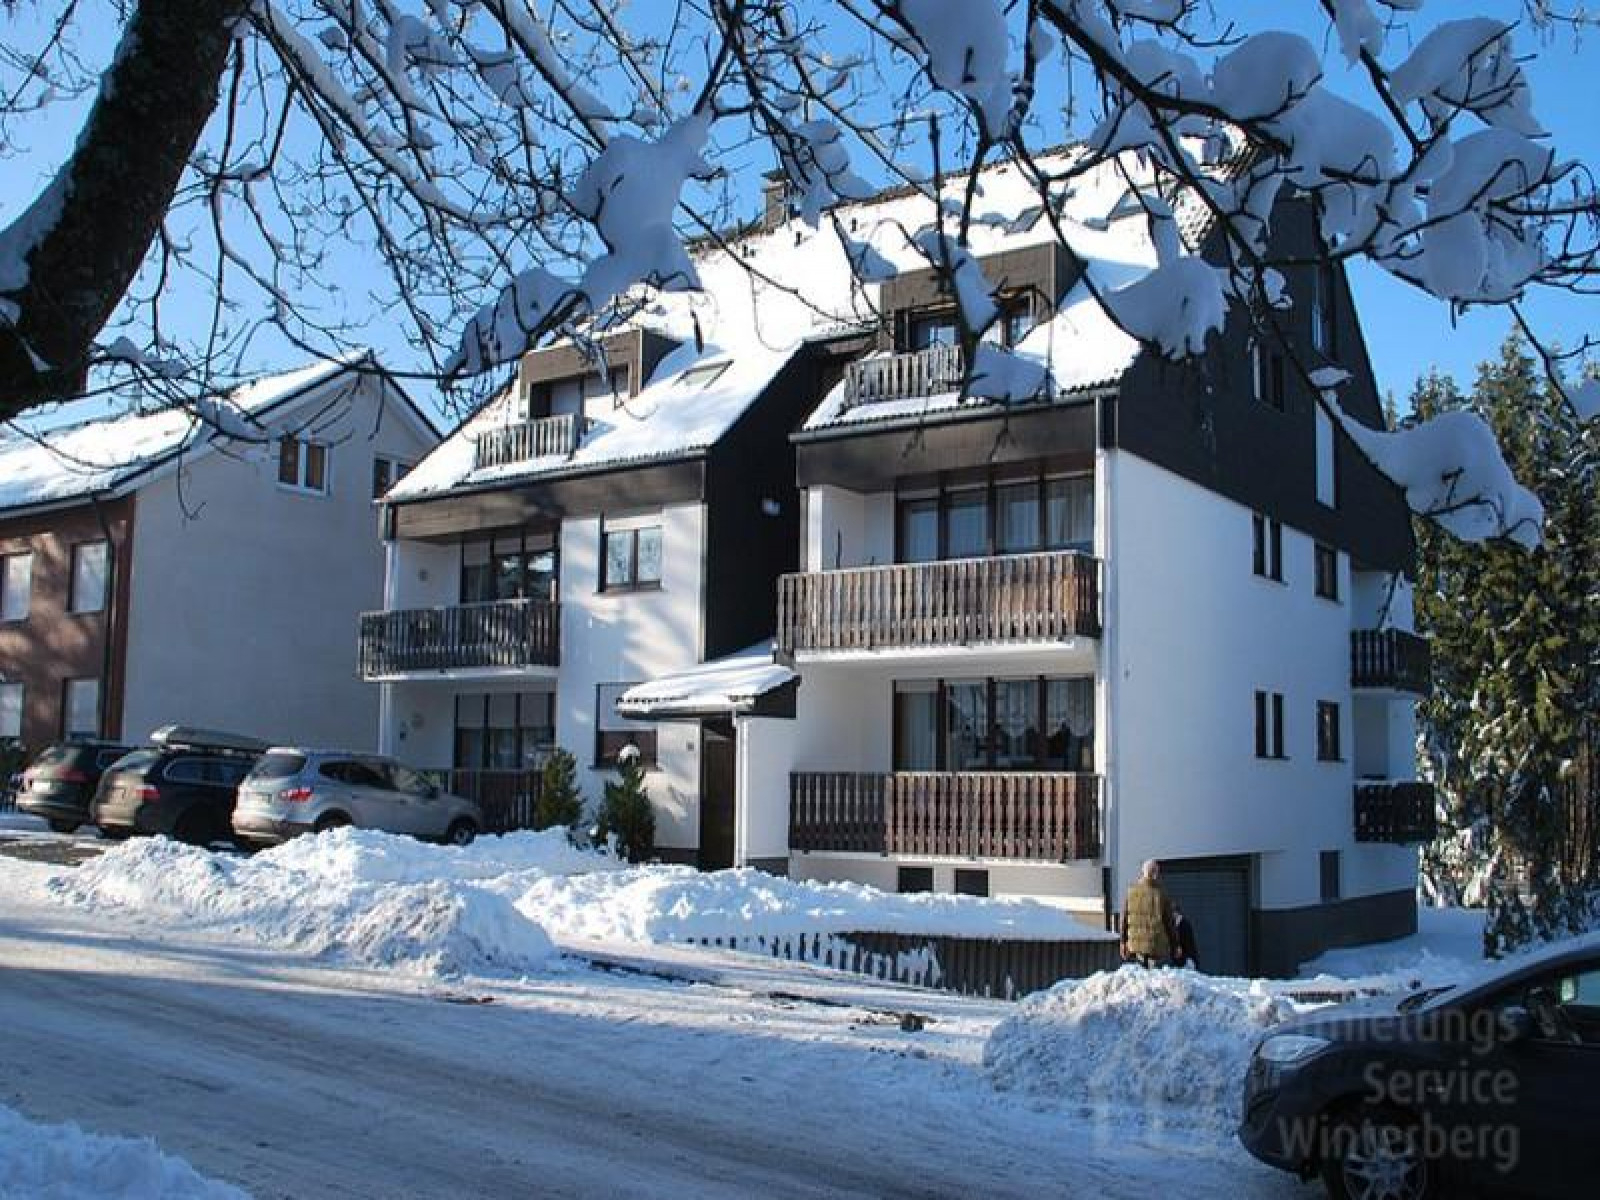 Heerlijkehuisjes.nl Luxe 2 persoons vakantieappartement in Winterberg - Duitsland - Europa - Winterberg